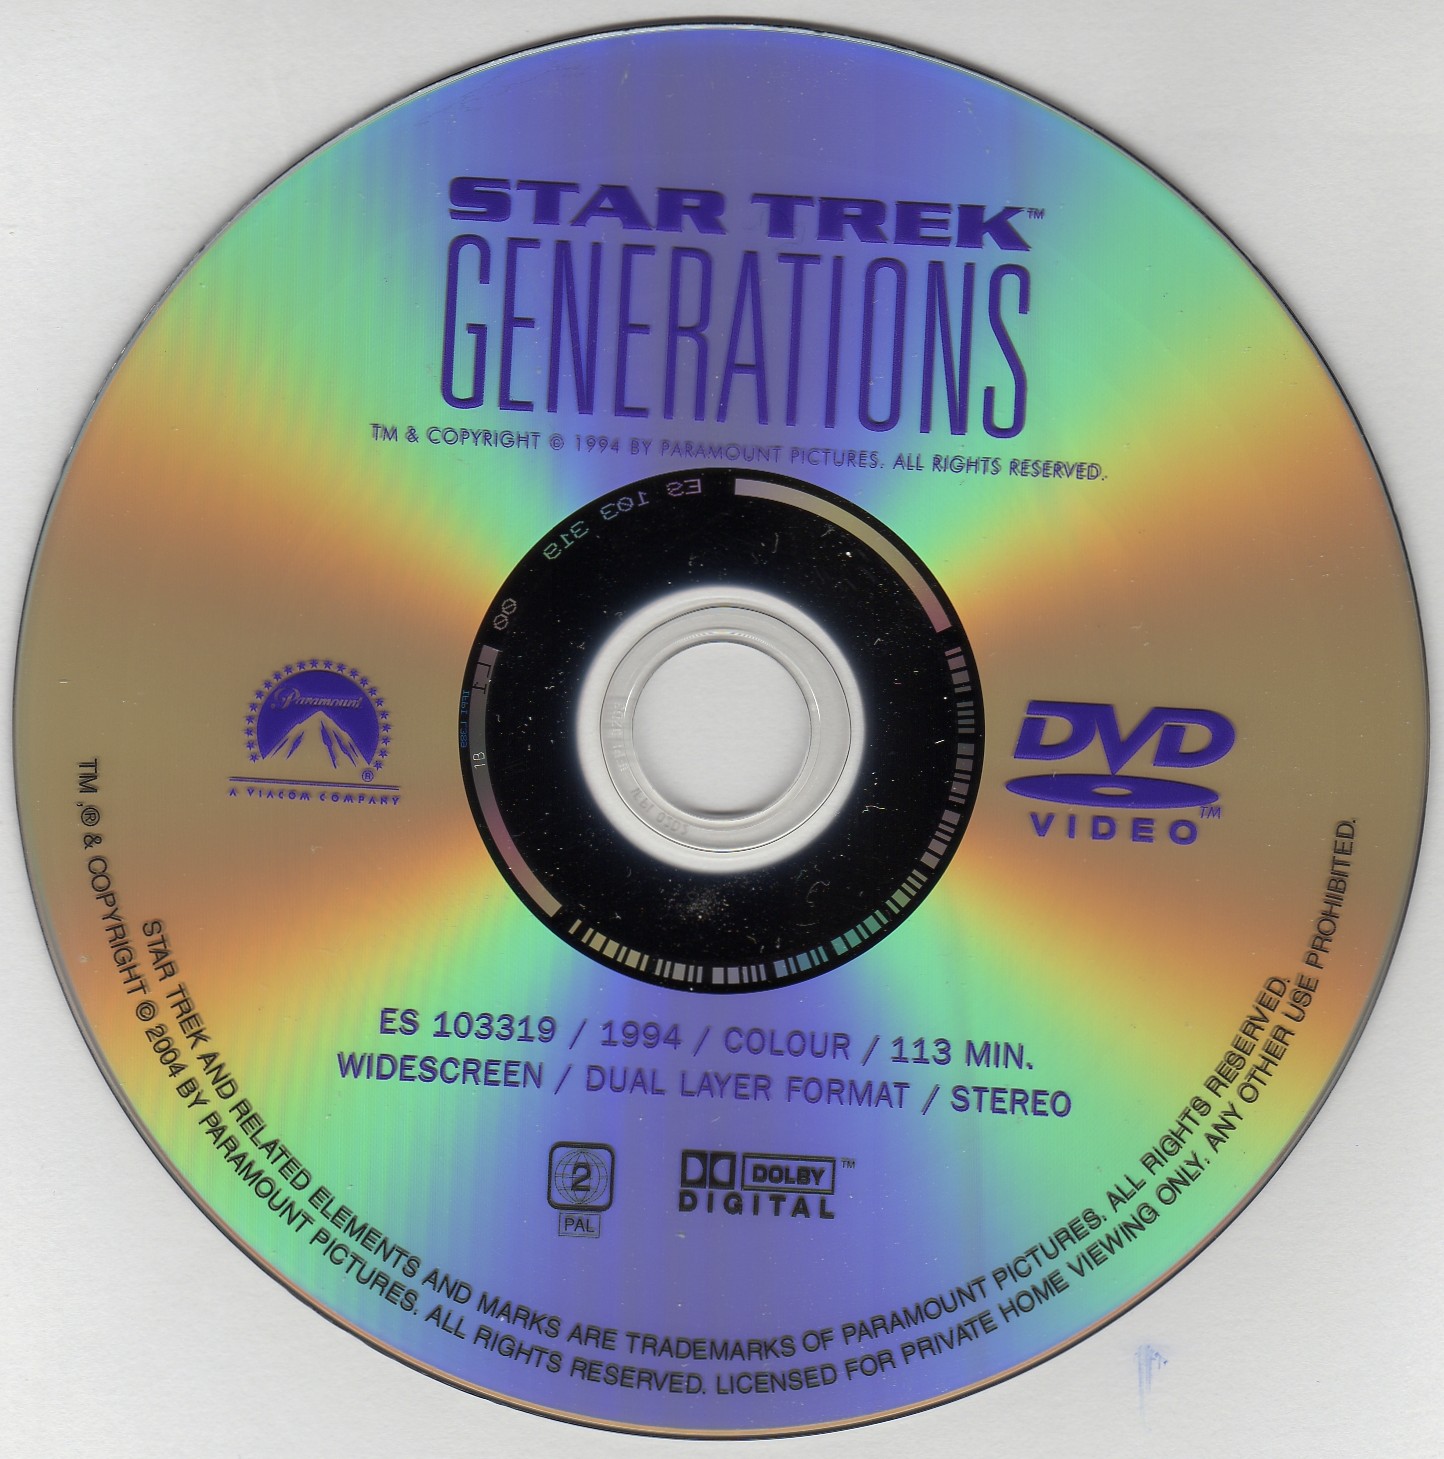 Star Trek generations